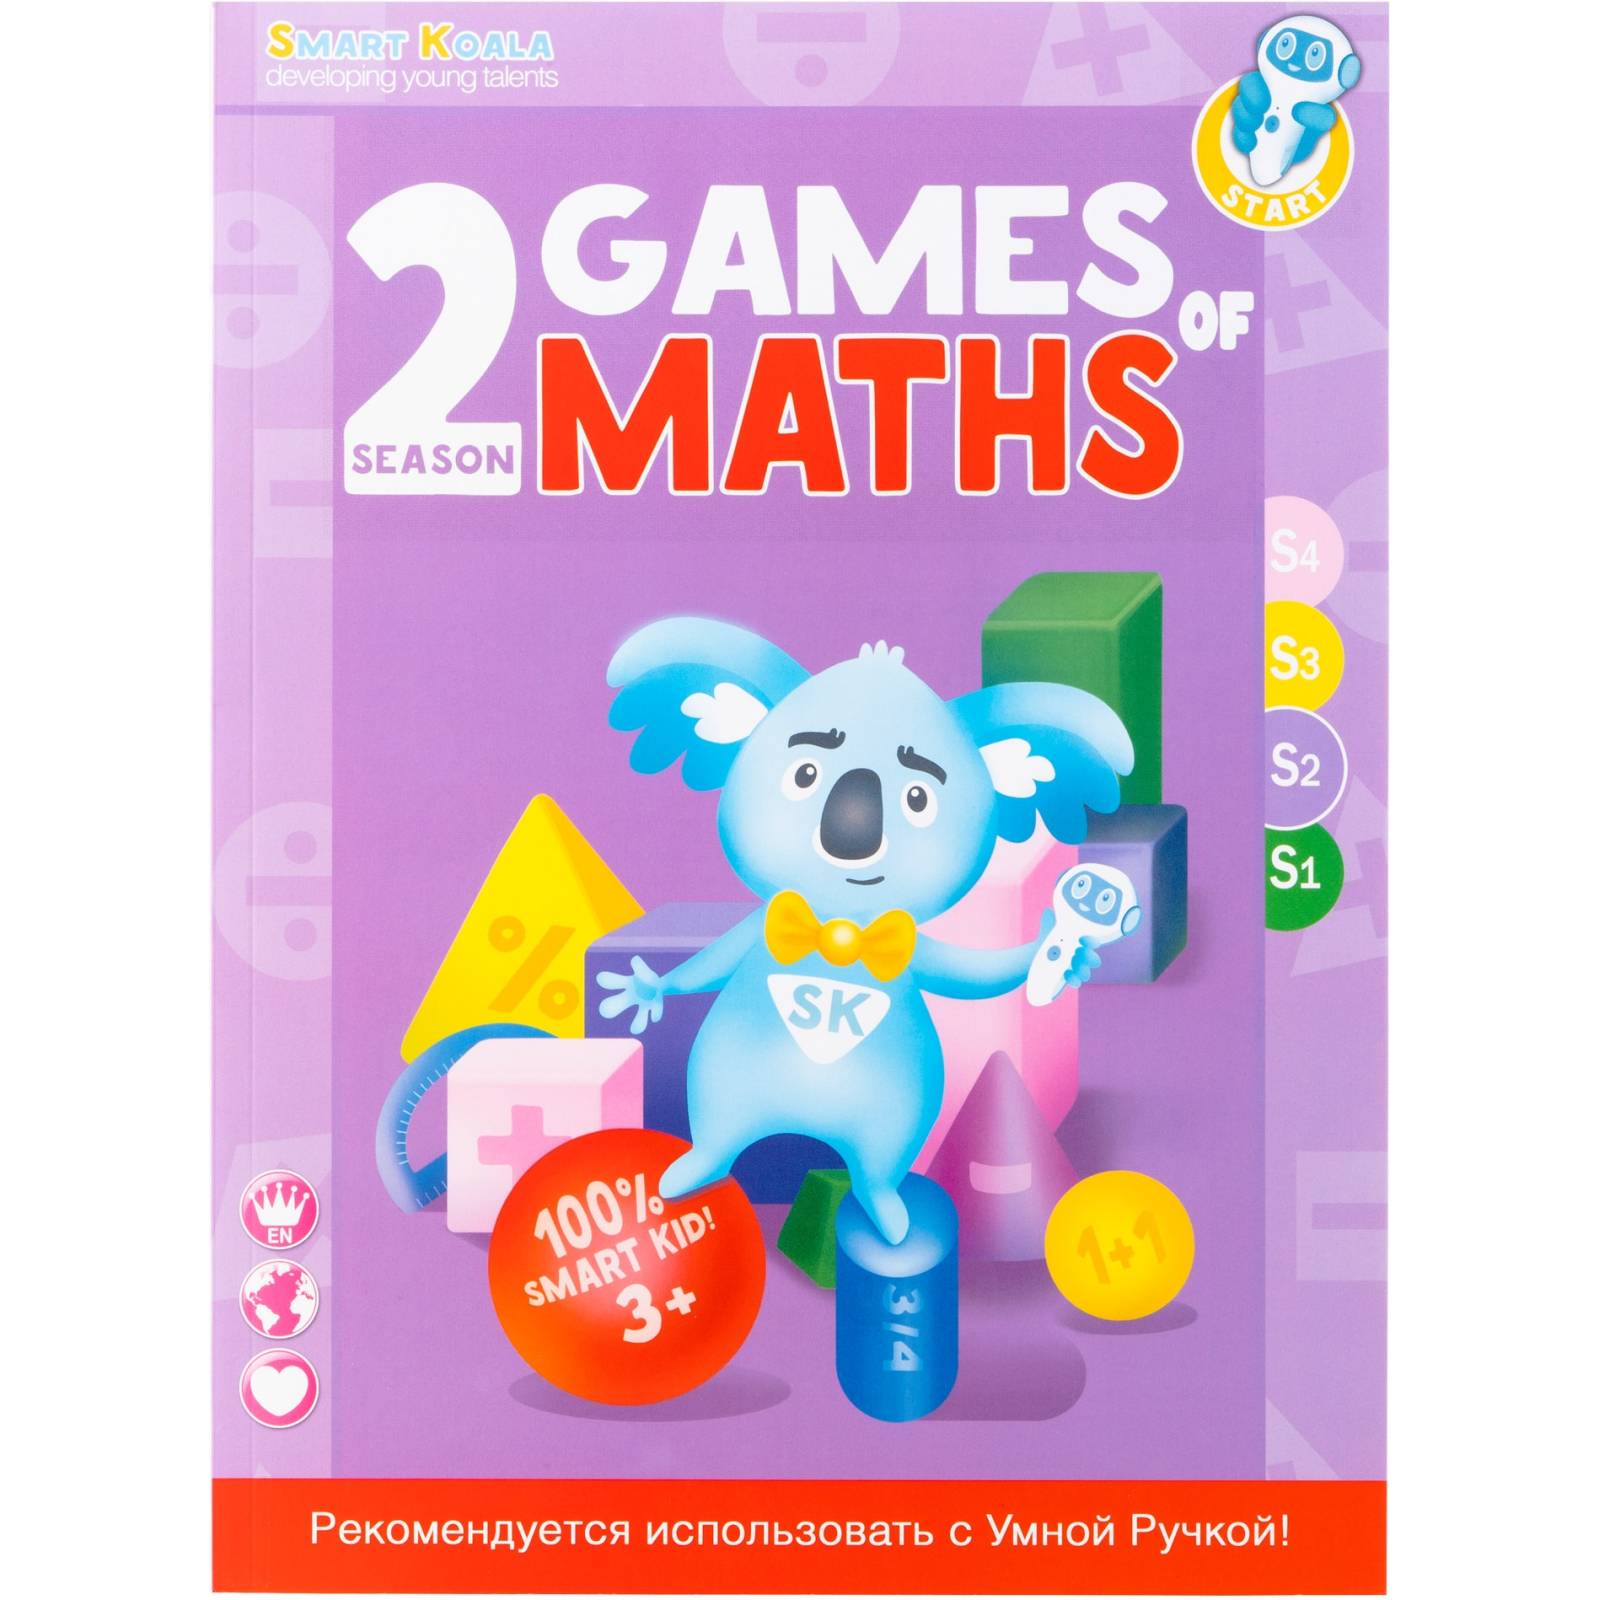 Интерактивная игрушка Smart Koala Набор интерактивных книг "Игры математики" 1-4 сезон (SKB1234GM) изображение 4